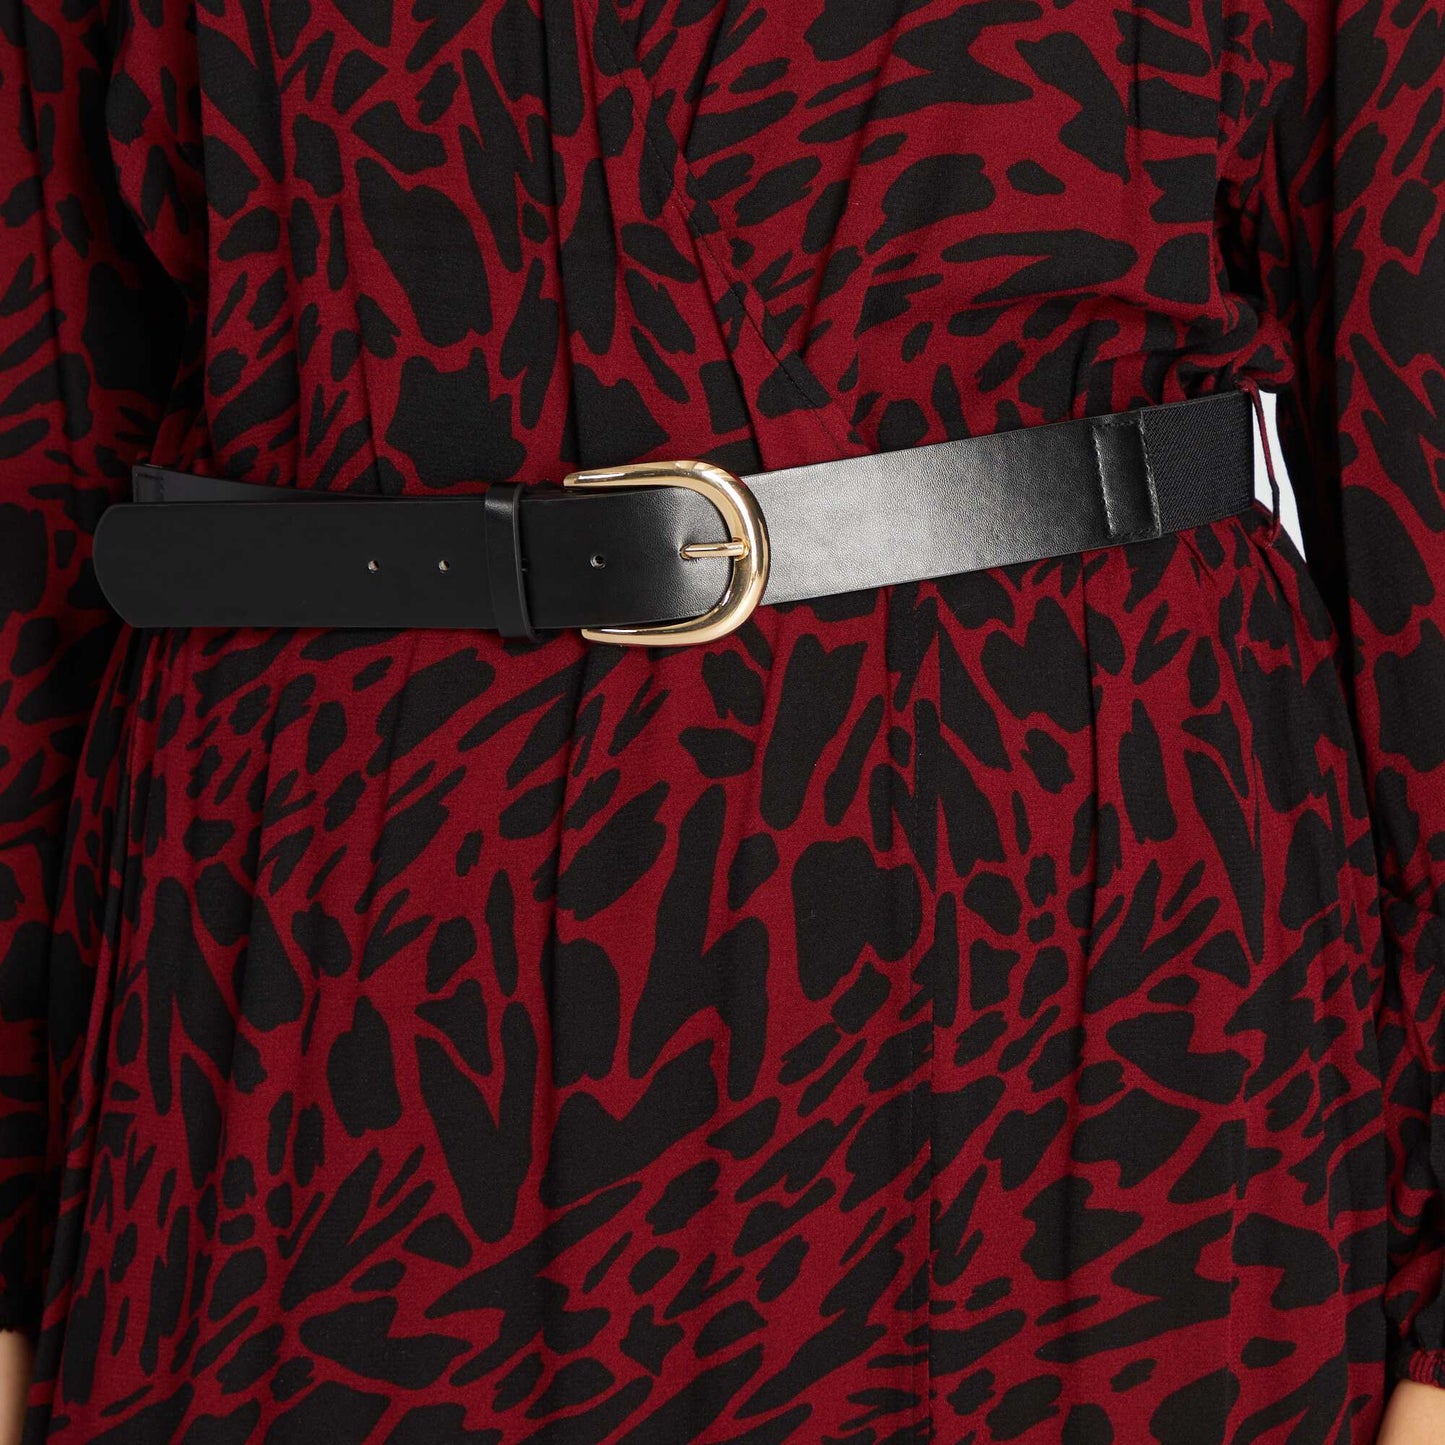 Robe longue avec imprim Noir/rouge